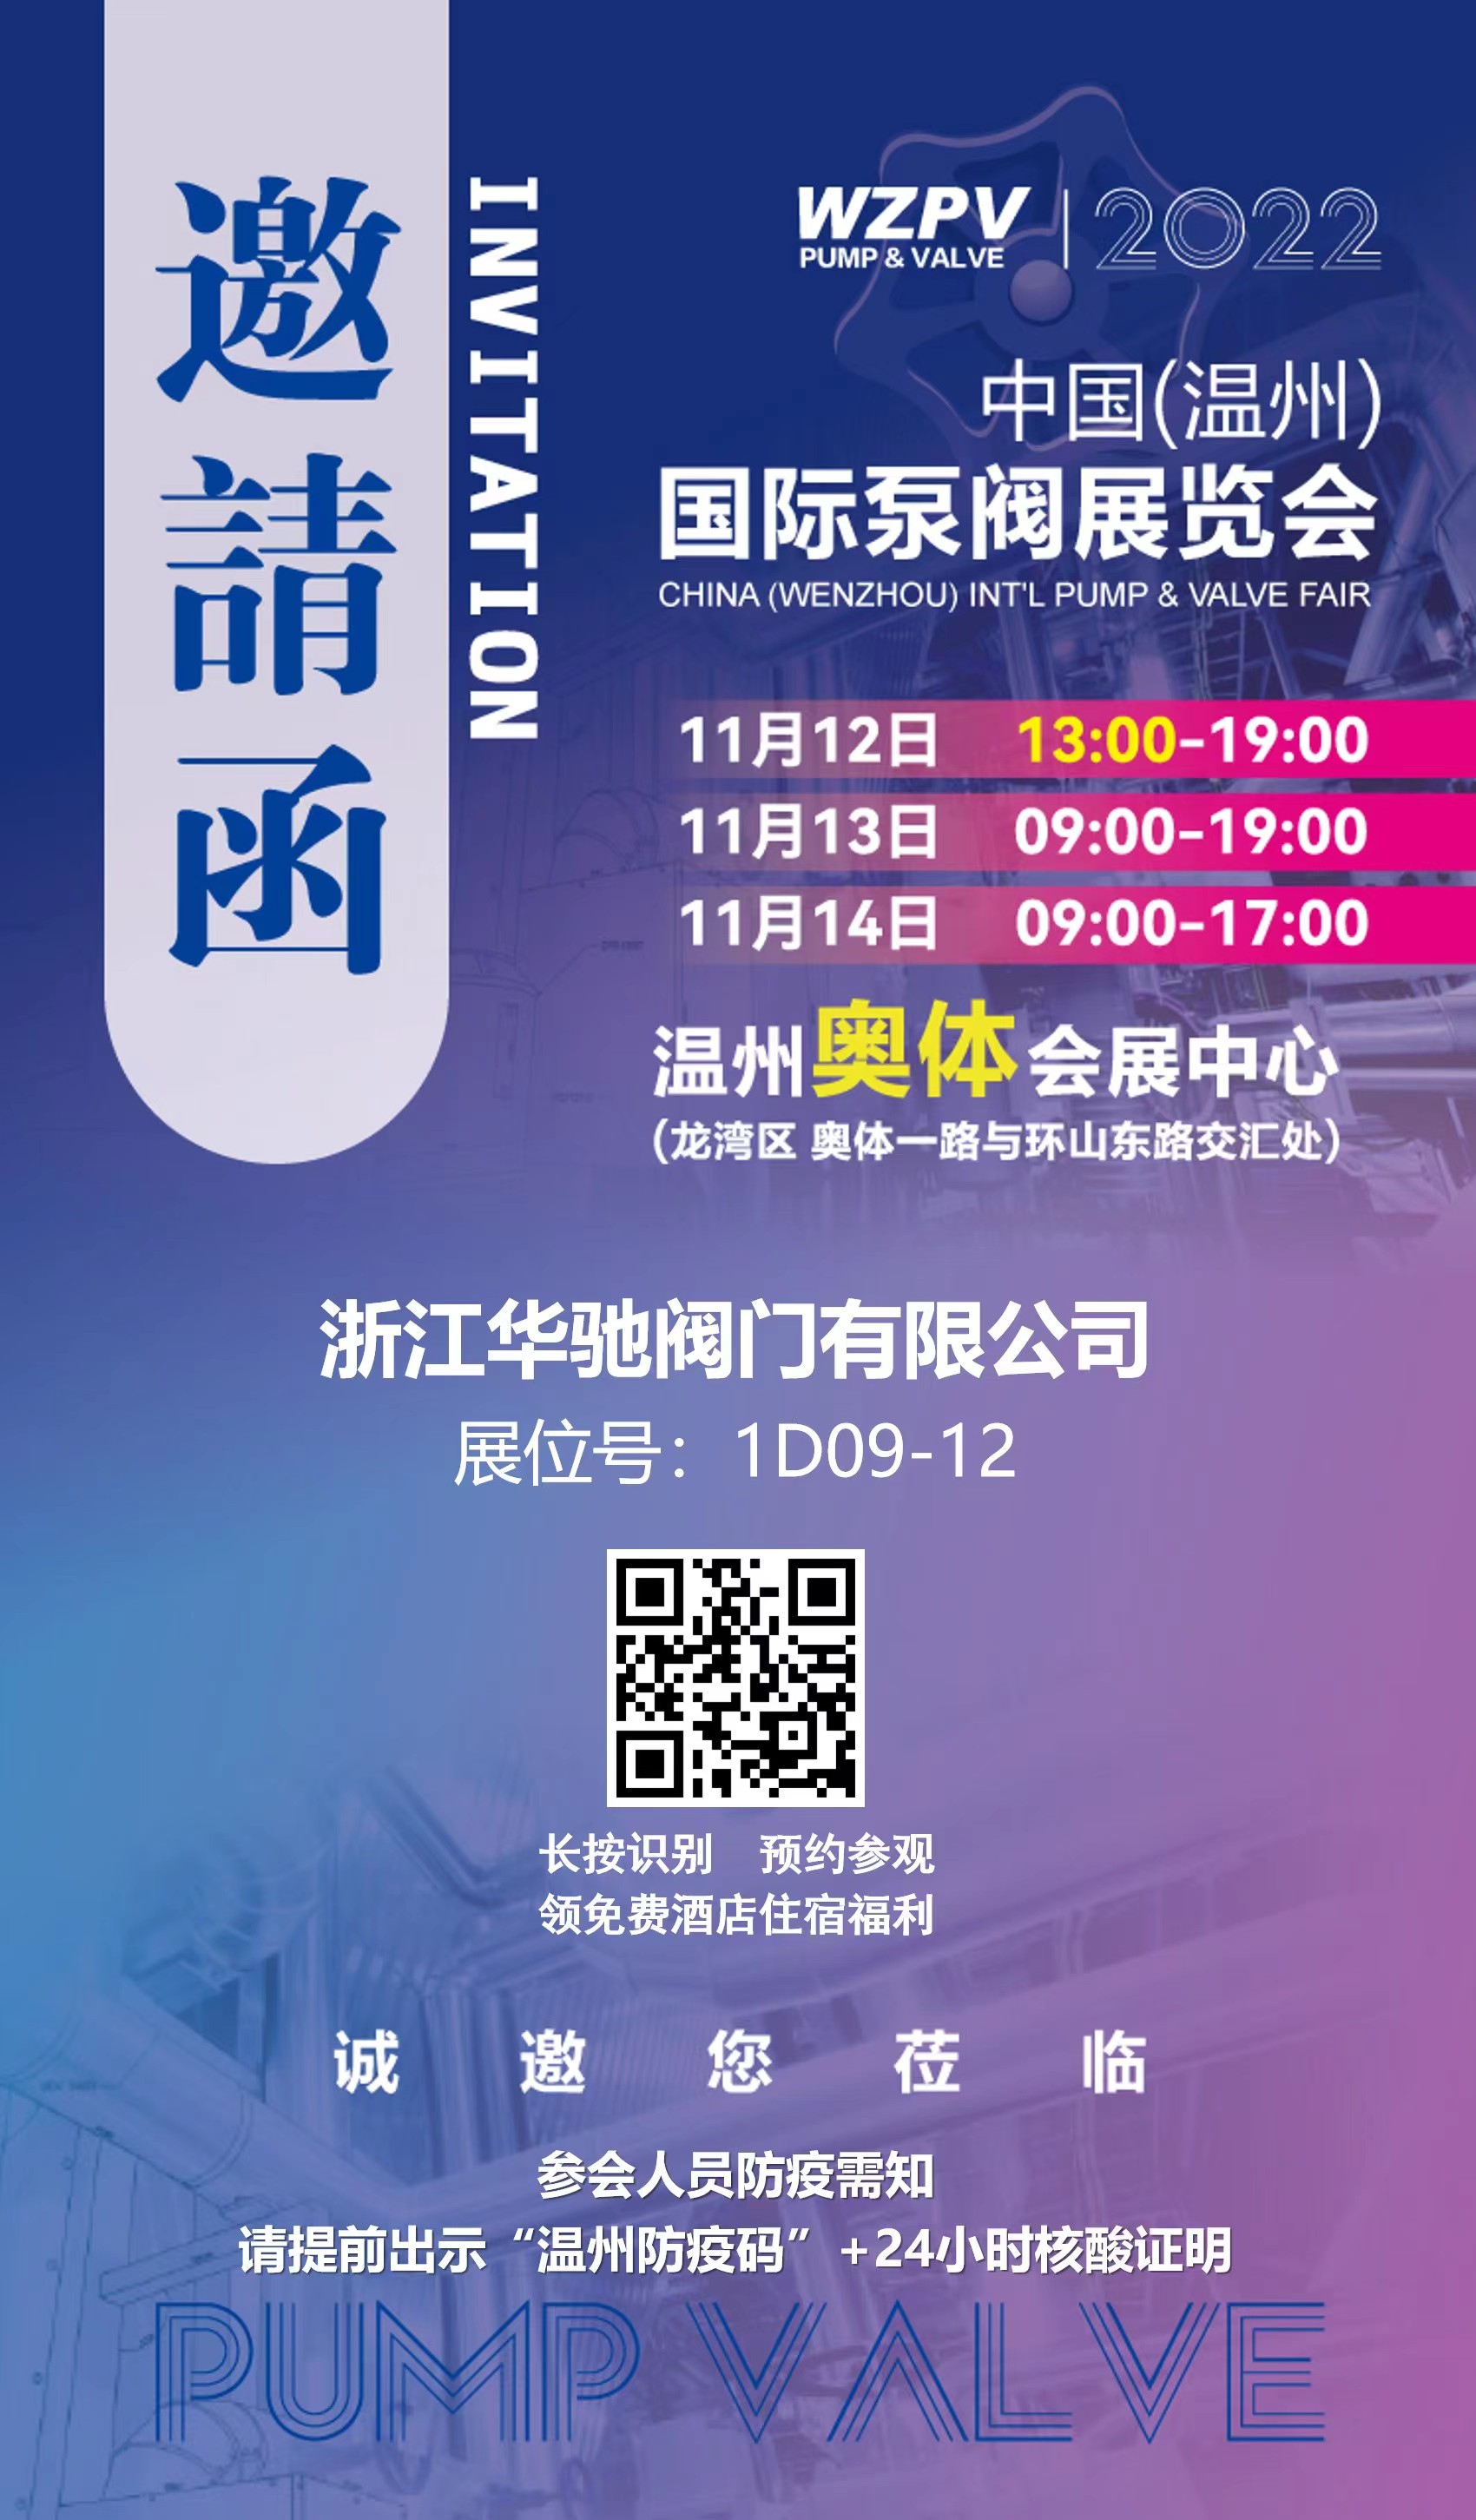 China Wenzhou International Pump Valve Exhibition